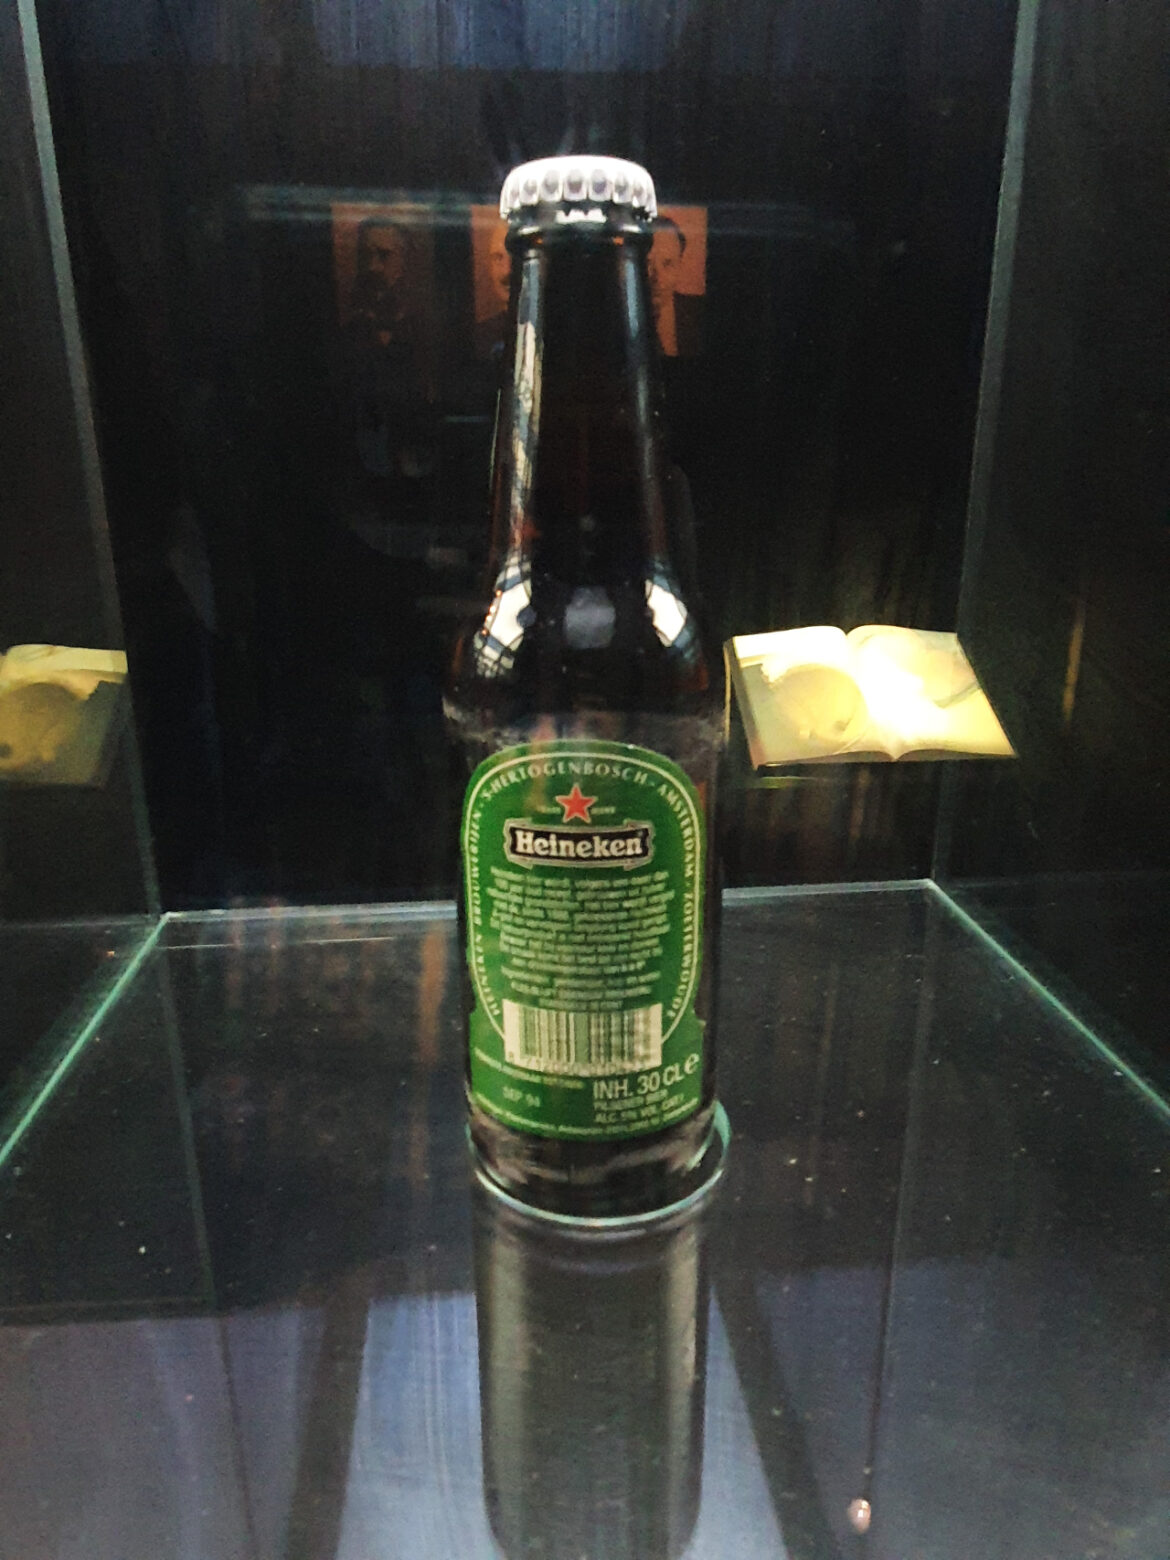 Heineken Experience Ausstellung 25: Alte Bierflasche 5